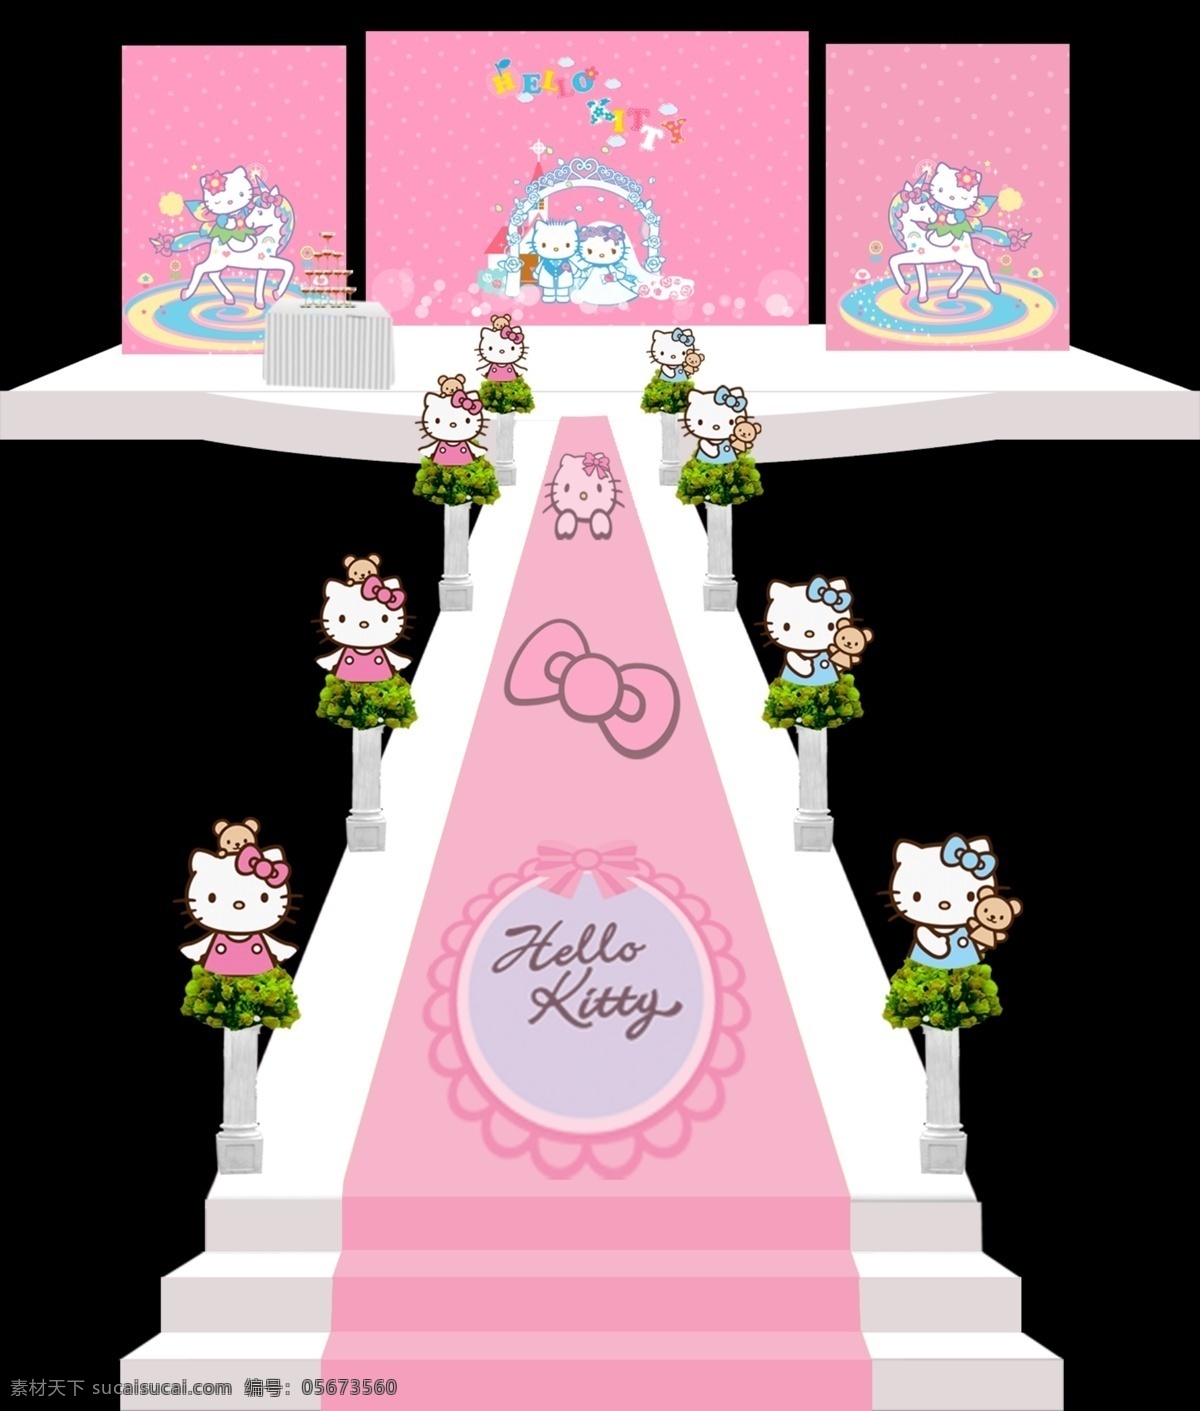 主题 婚礼 舞台设计 主题婚礼设计 kitty 凯蒂猫 婚礼舞台设计 分层 源文件